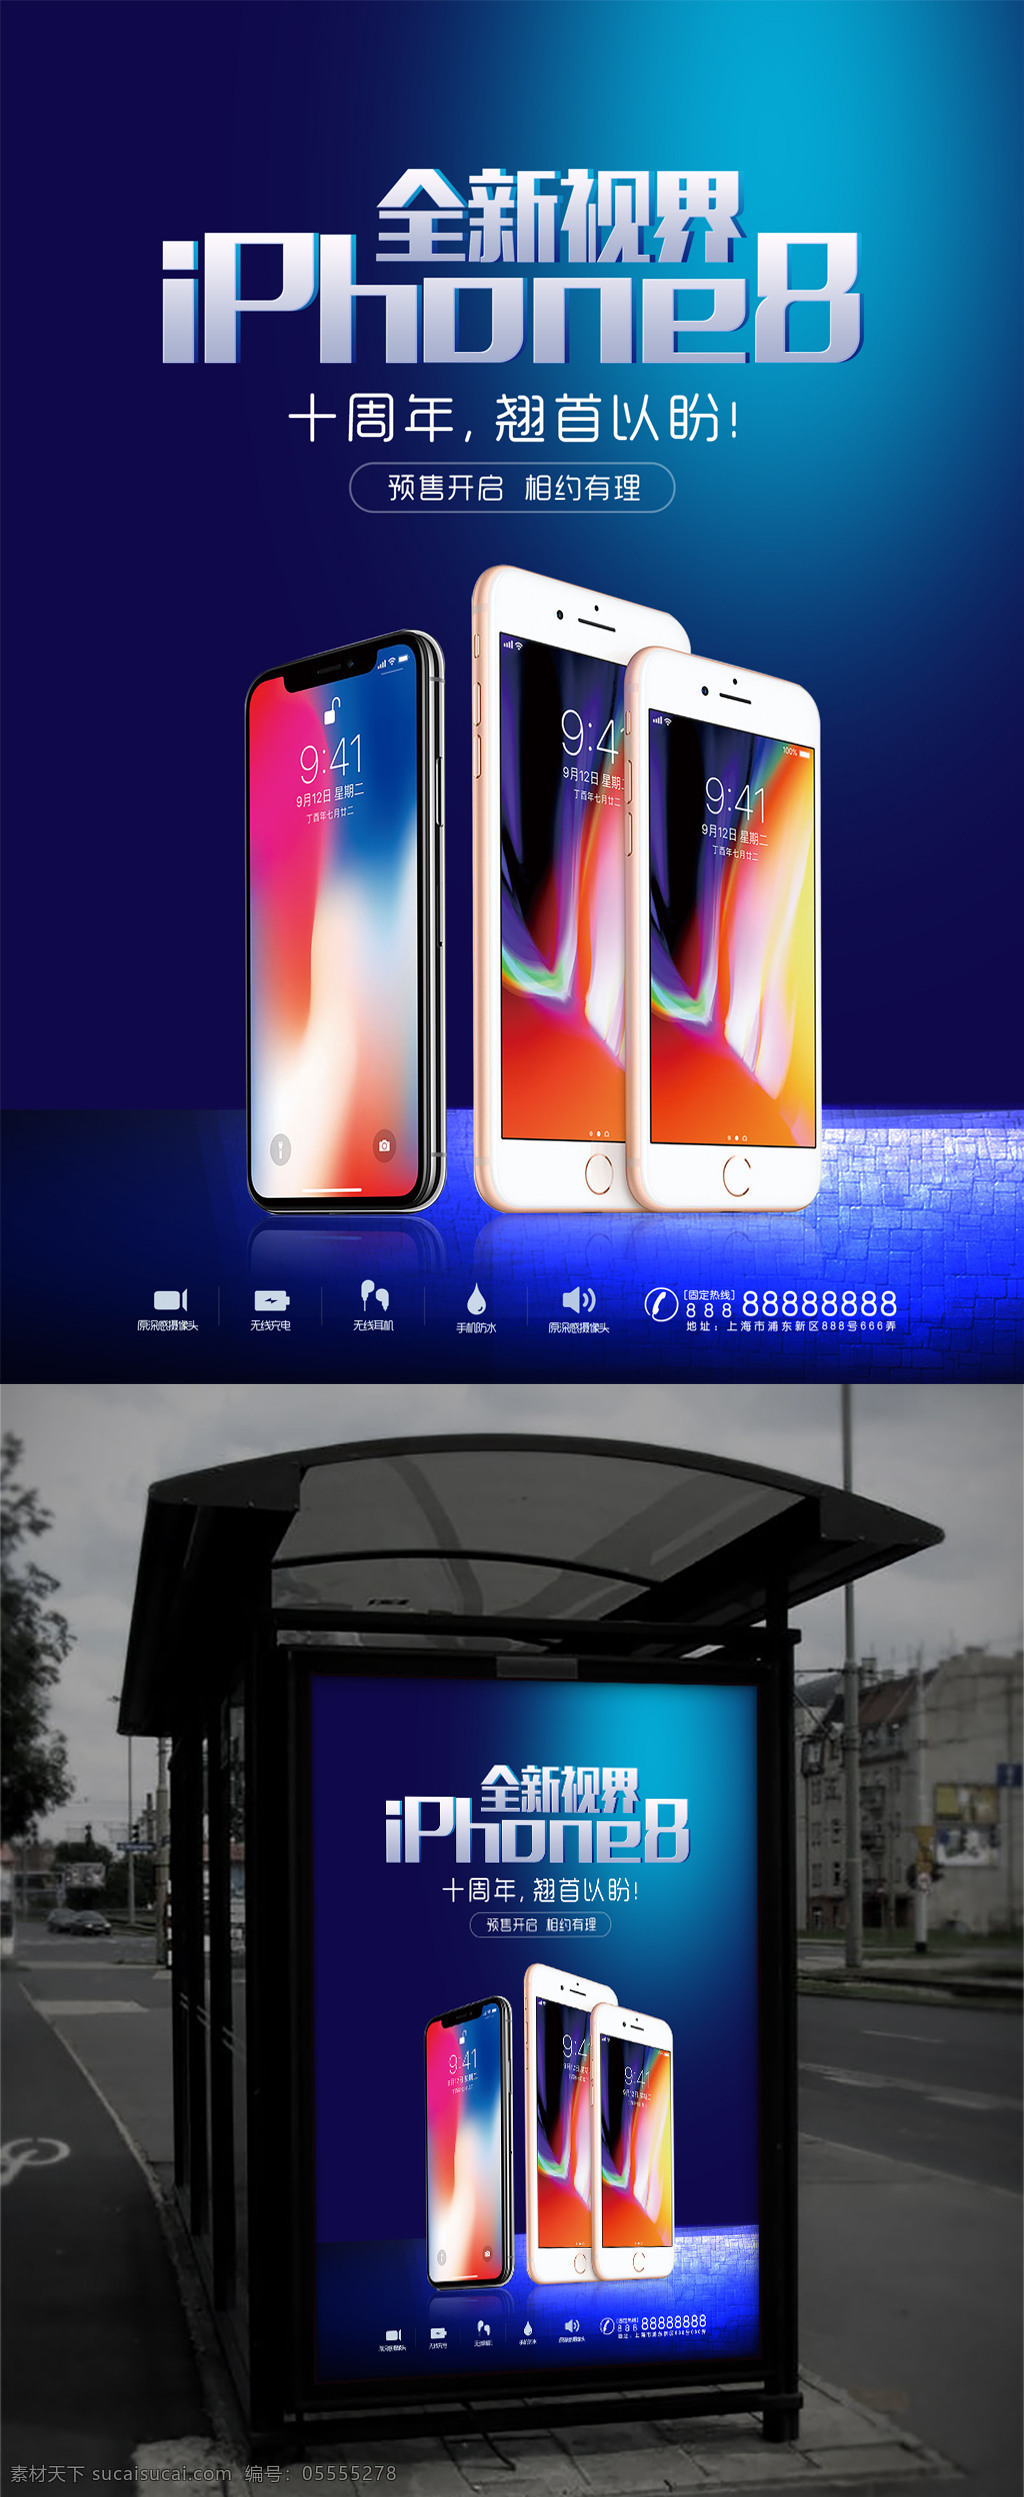 时尚 iphone8 预售 宣传海报 海报 广告 宣传